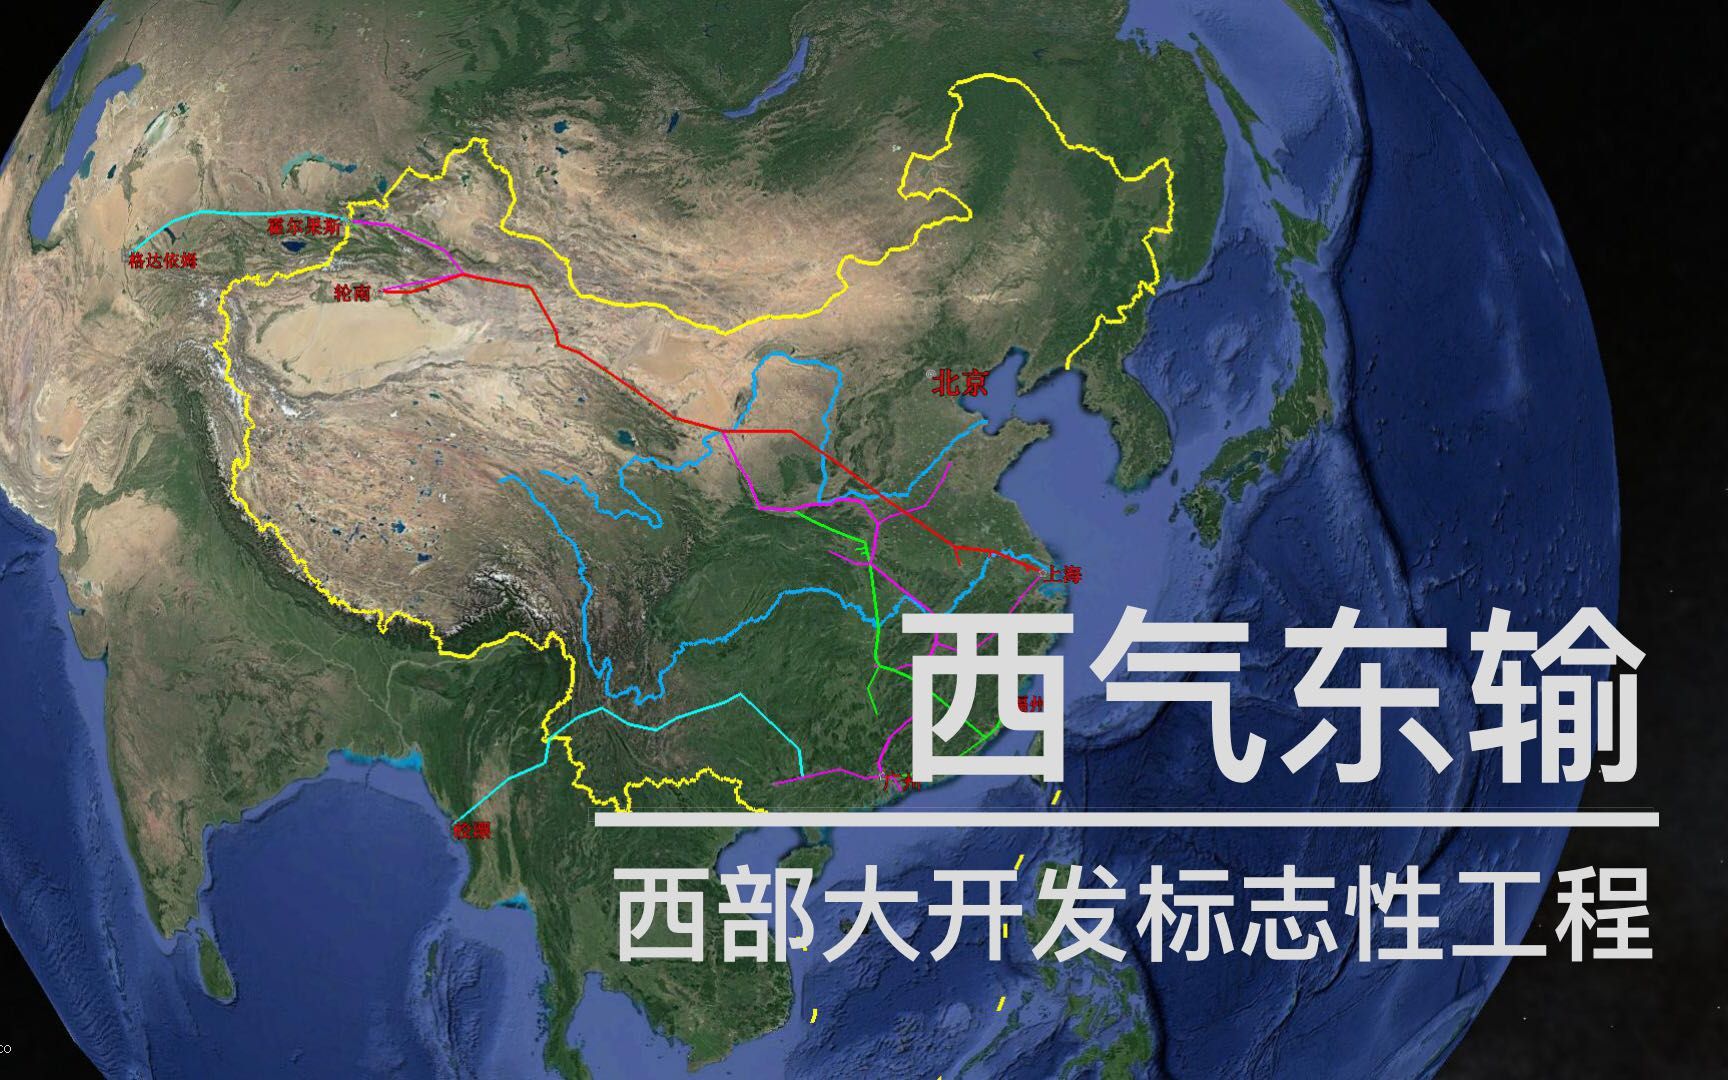 【中国四大工程】西气东输,西部大开发标志性工程,两万公里管道网遍布